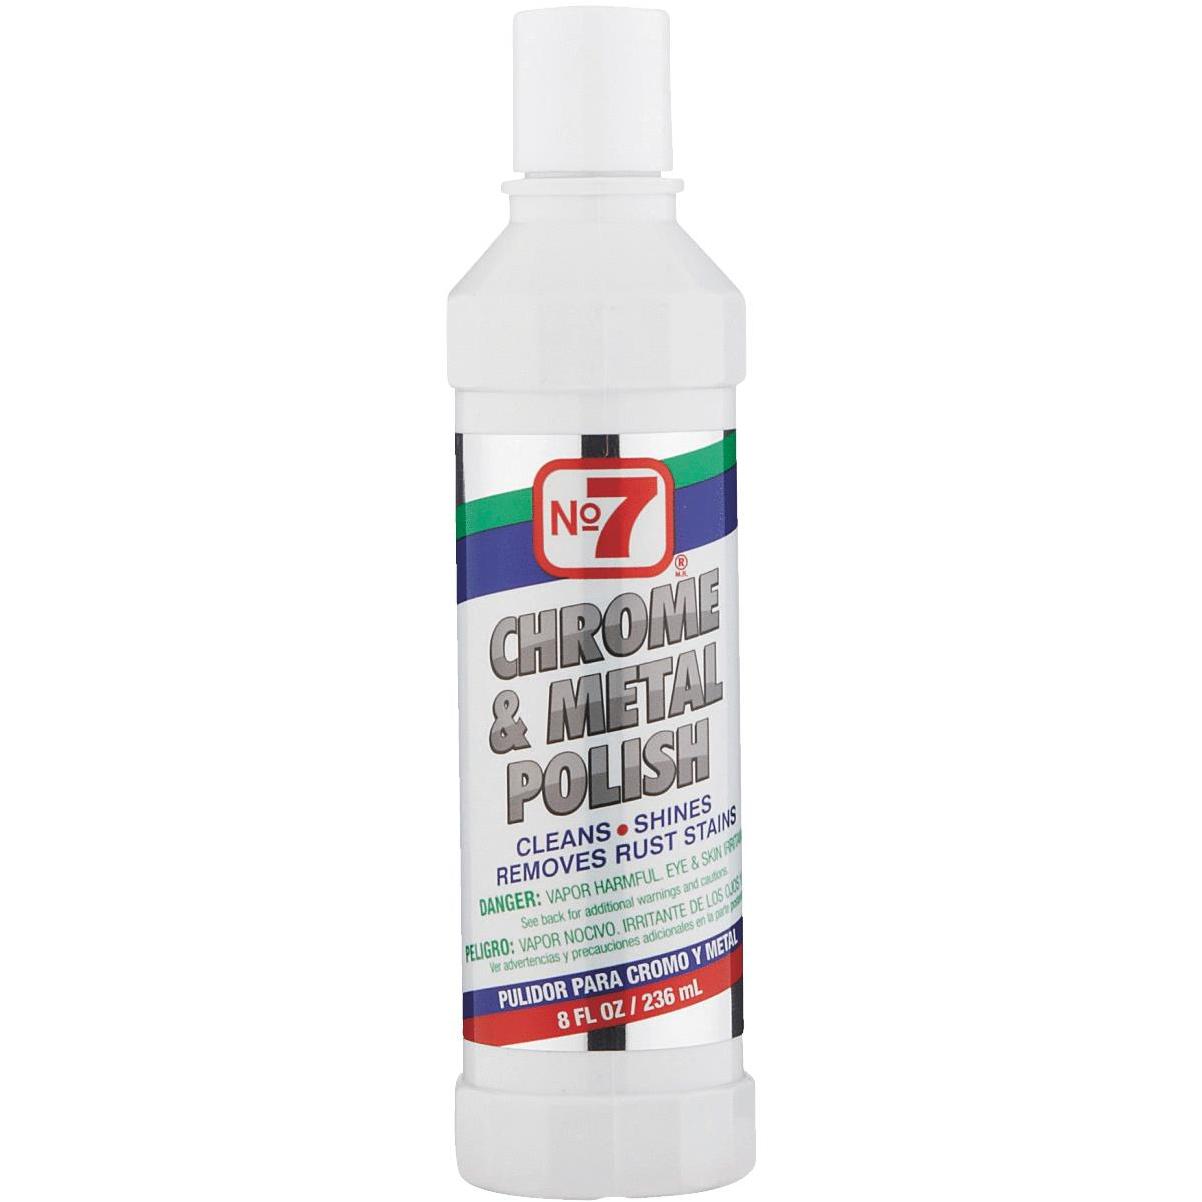 Brasso Metal Polish & Cleaner - 8 fl oz bottle